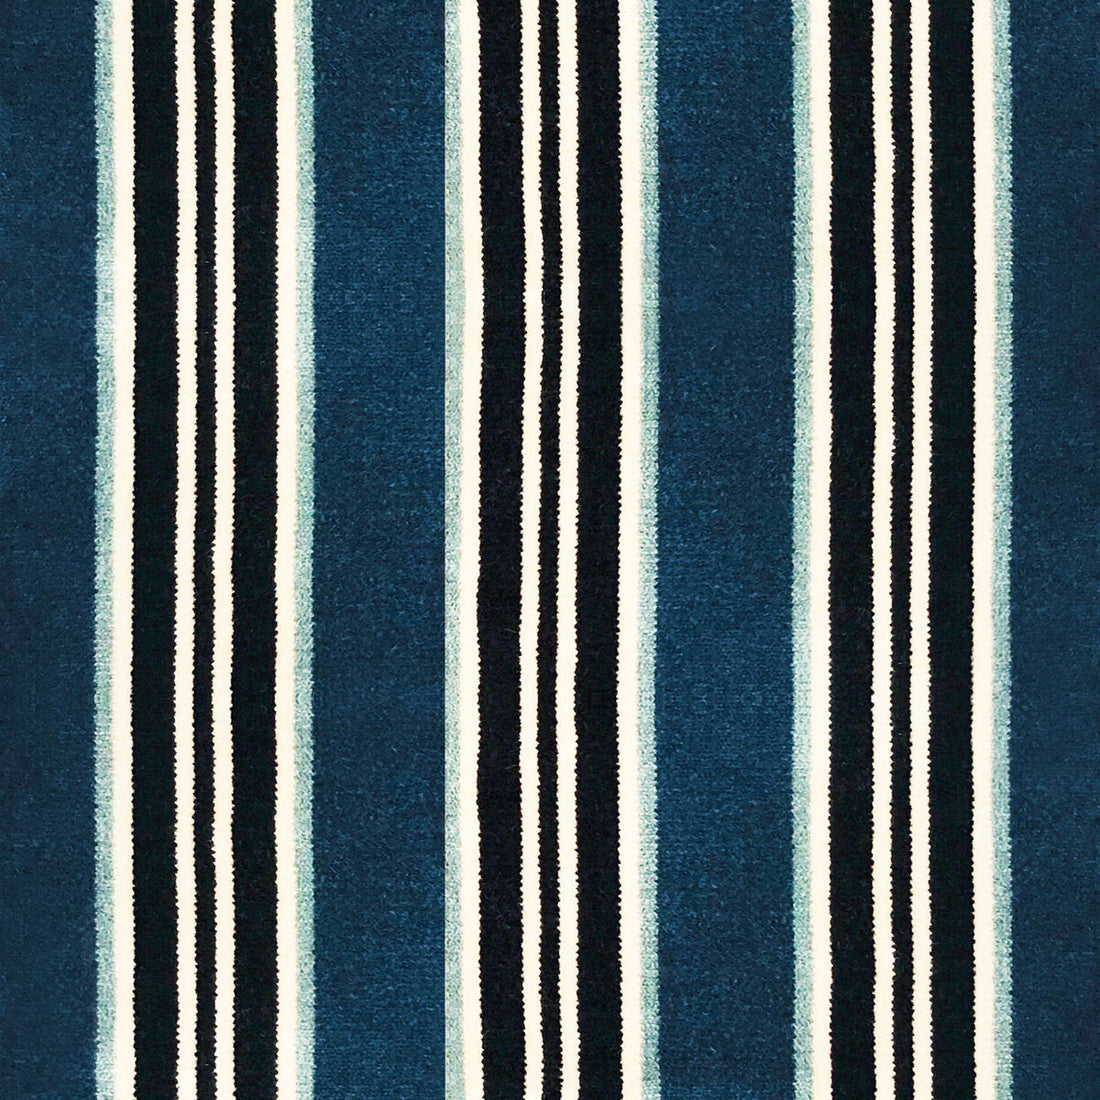 Tucha fabric in azul color - pattern LCT1051.001.0 - by Gaston y Daniela in the Lorenzo Castillo VI collection